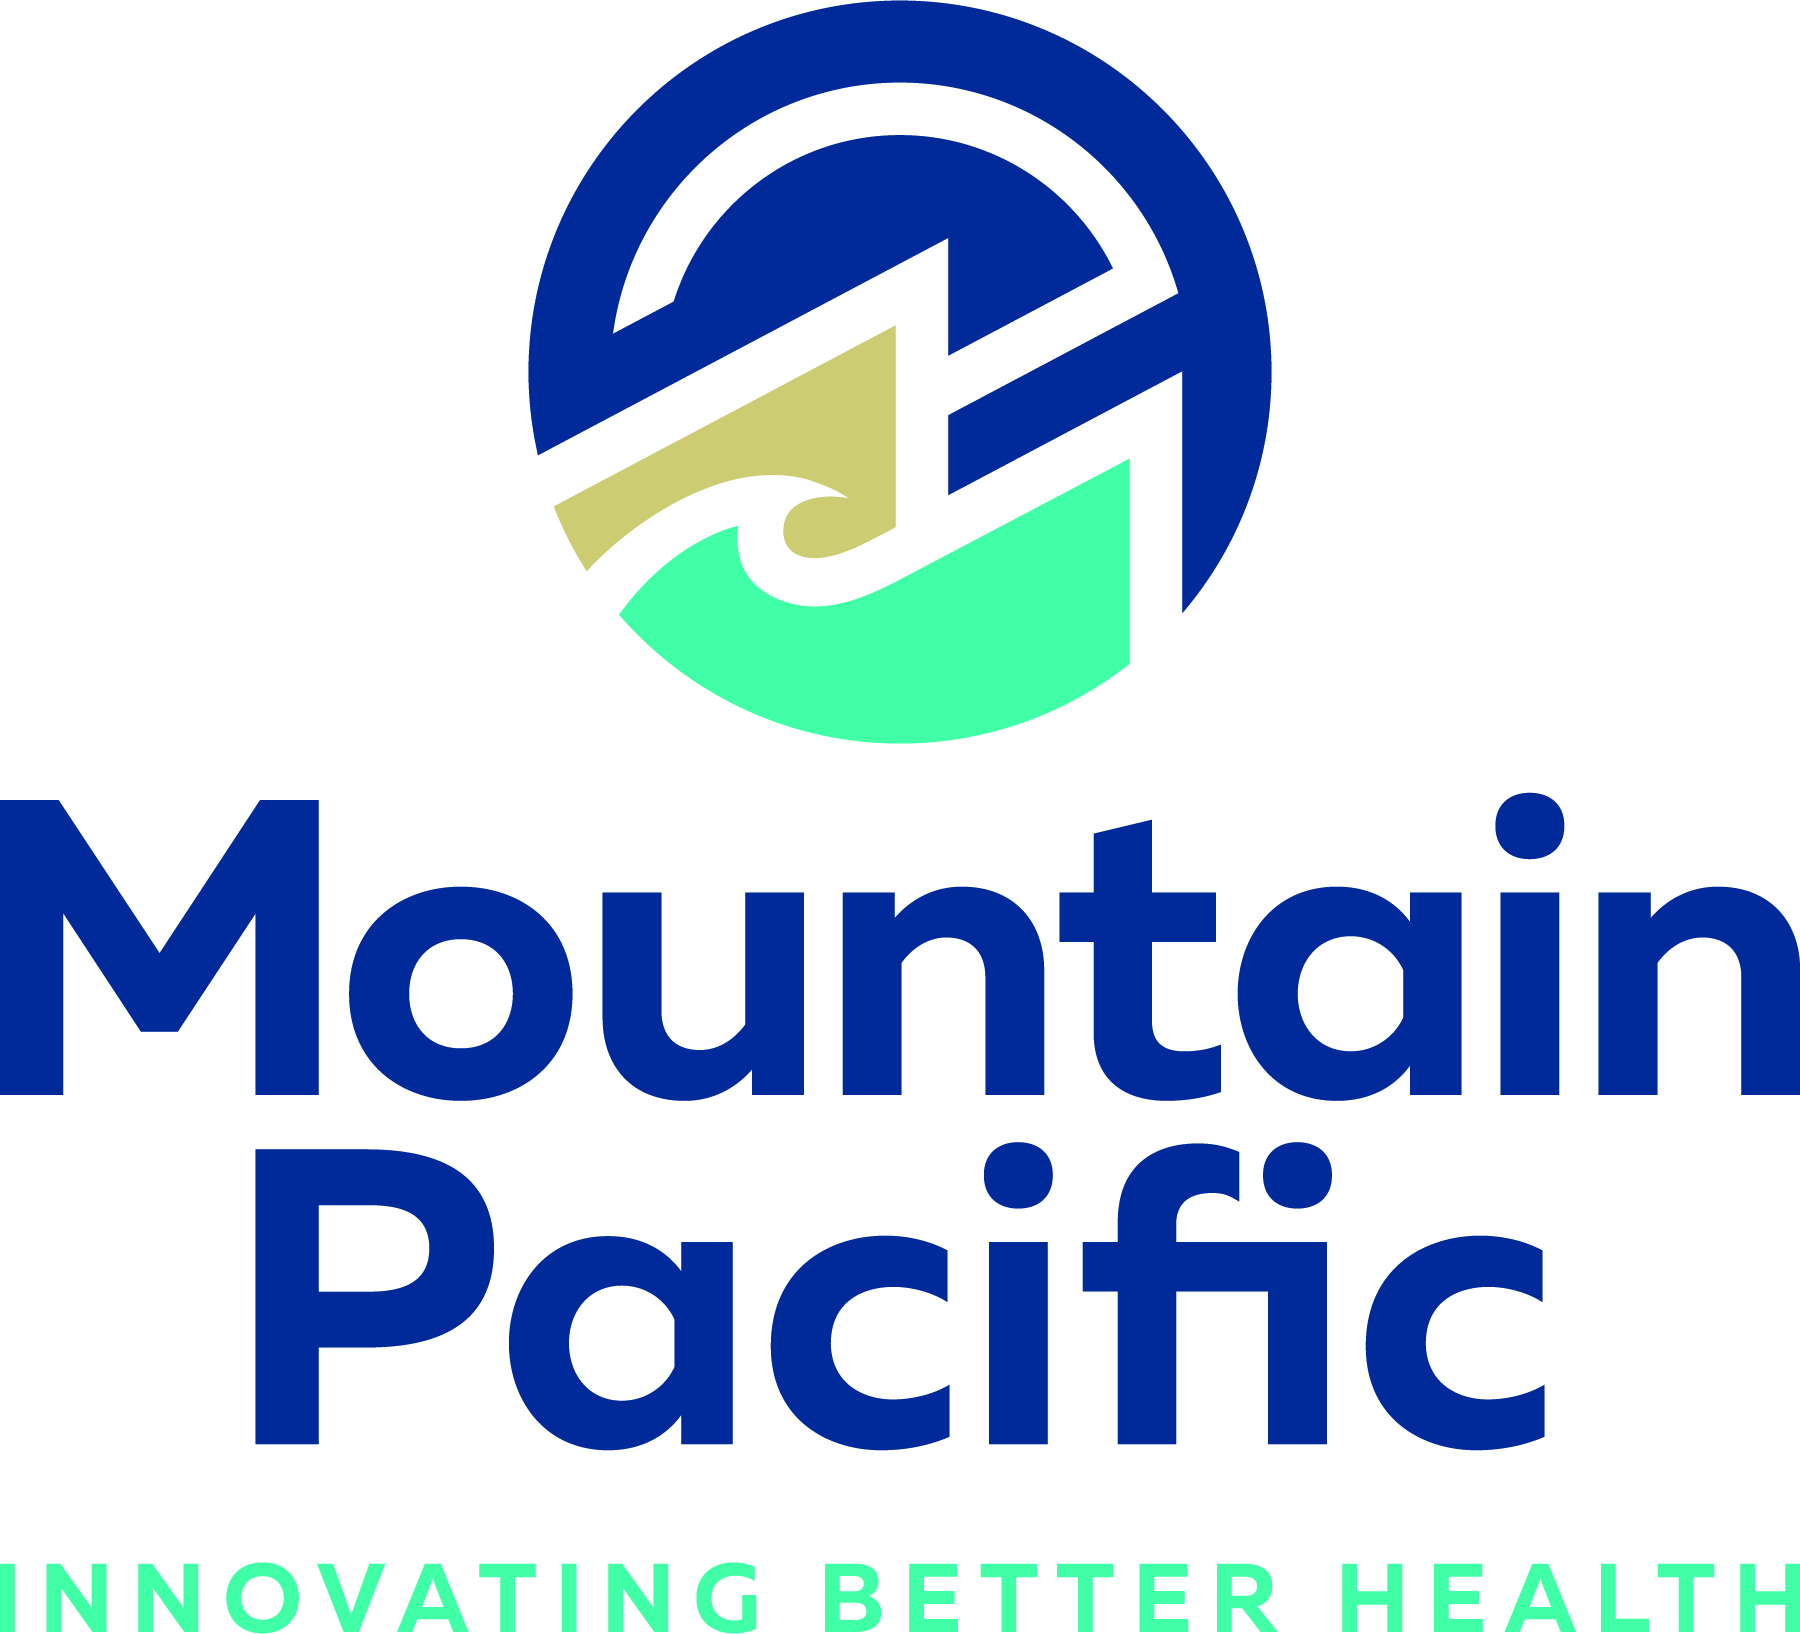 Mountain Pacific logo